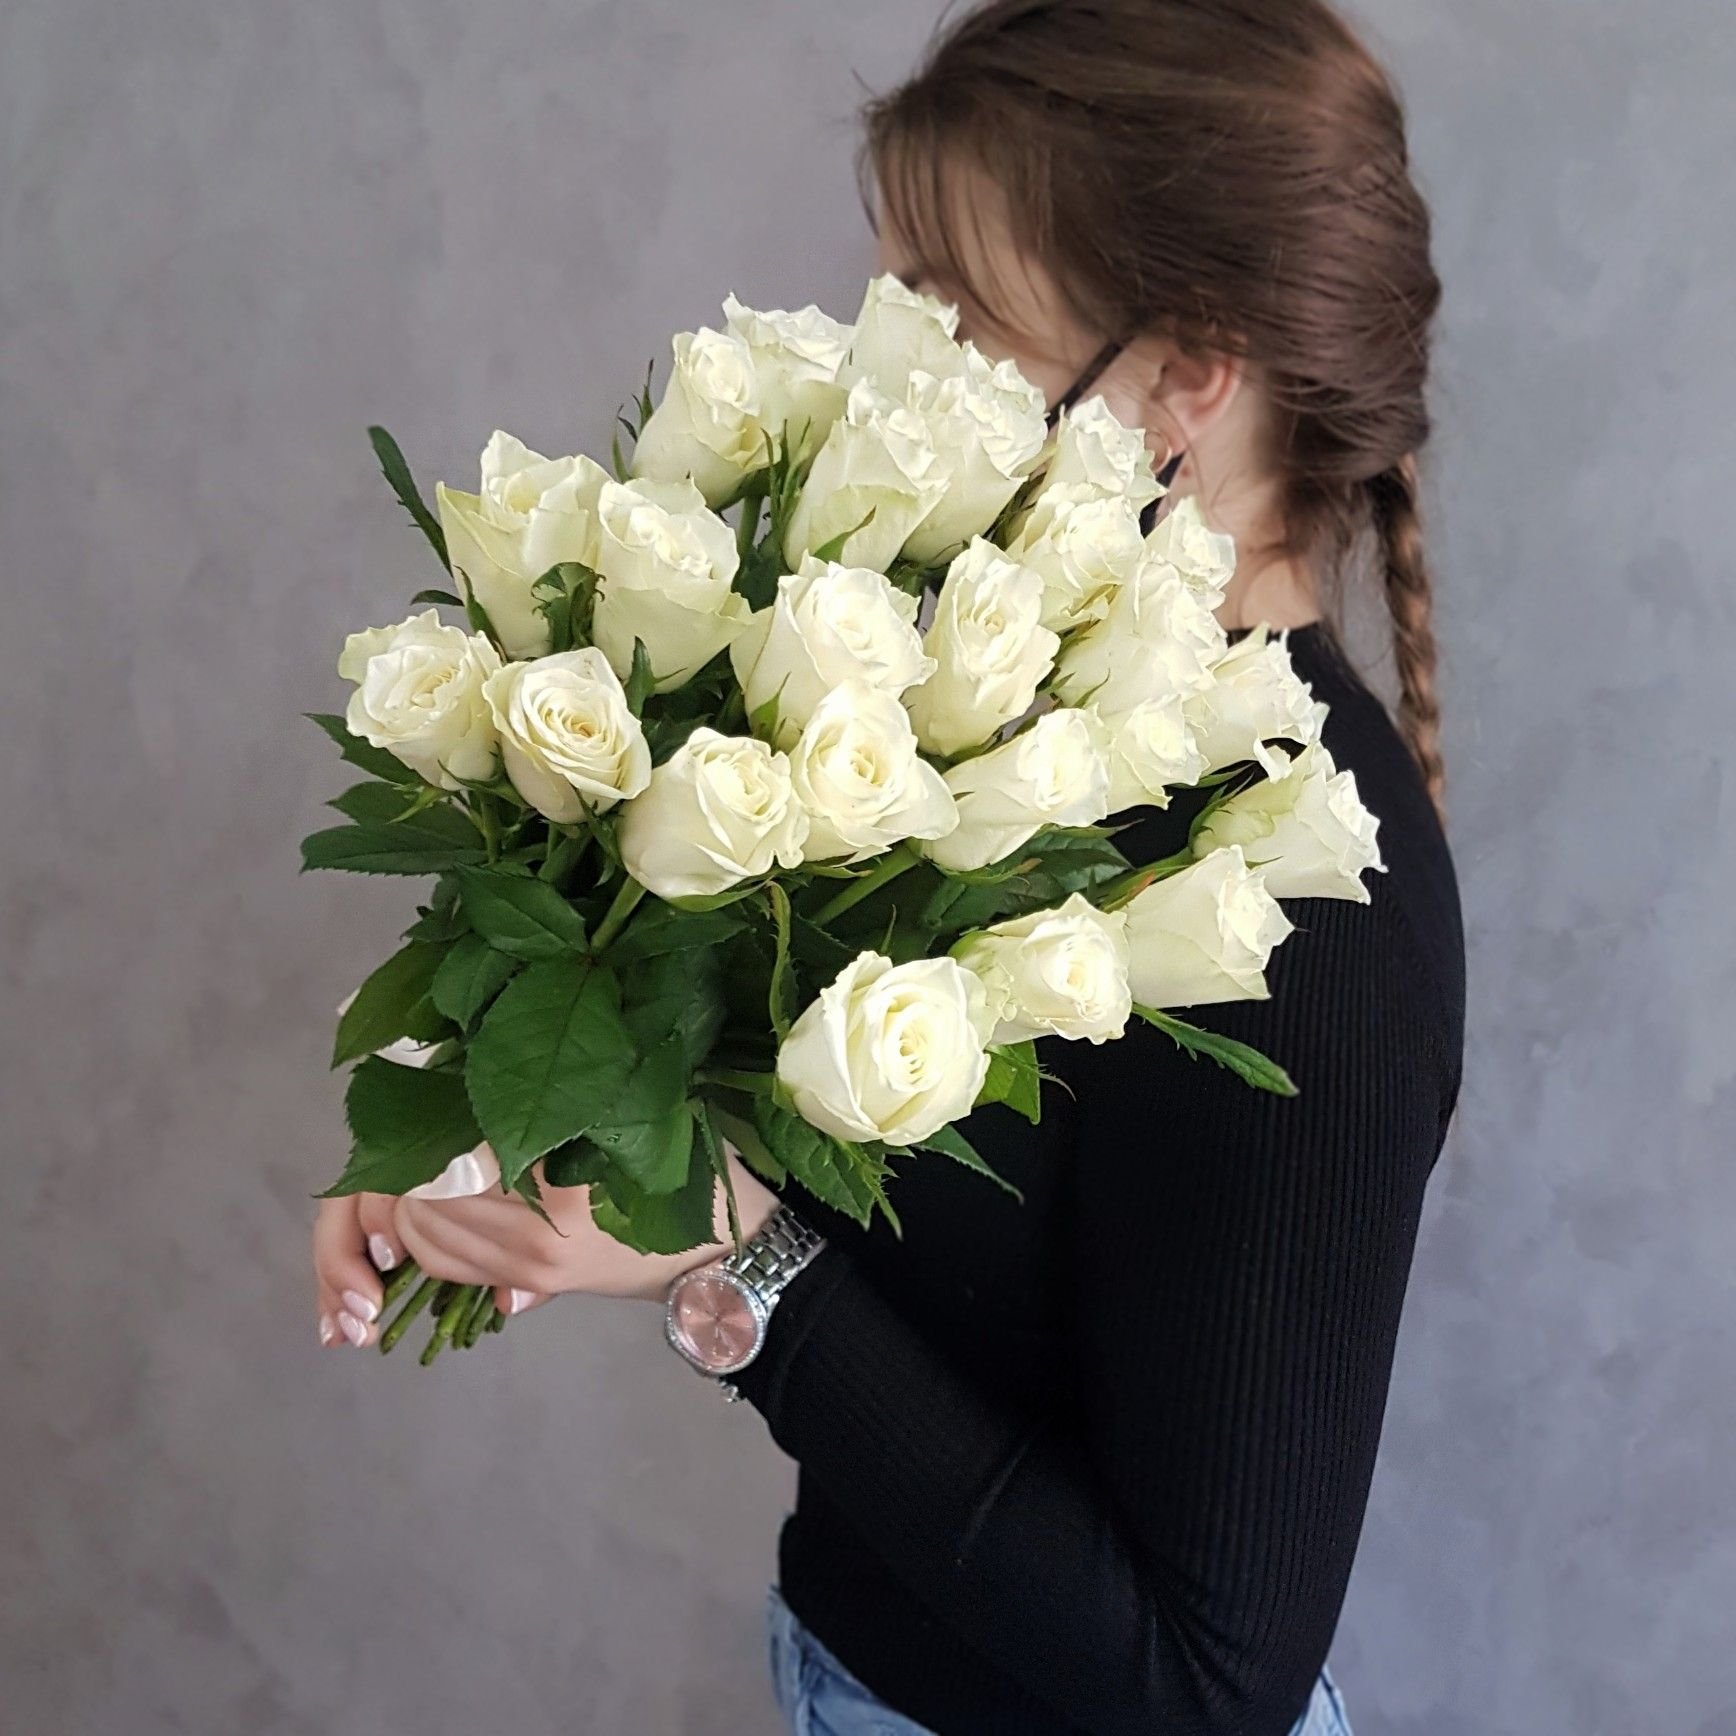 Белые розы в руках. Девушка с белыми розами. Девушка с букетом белых роз. Девушка с розой. Букет белых роз.